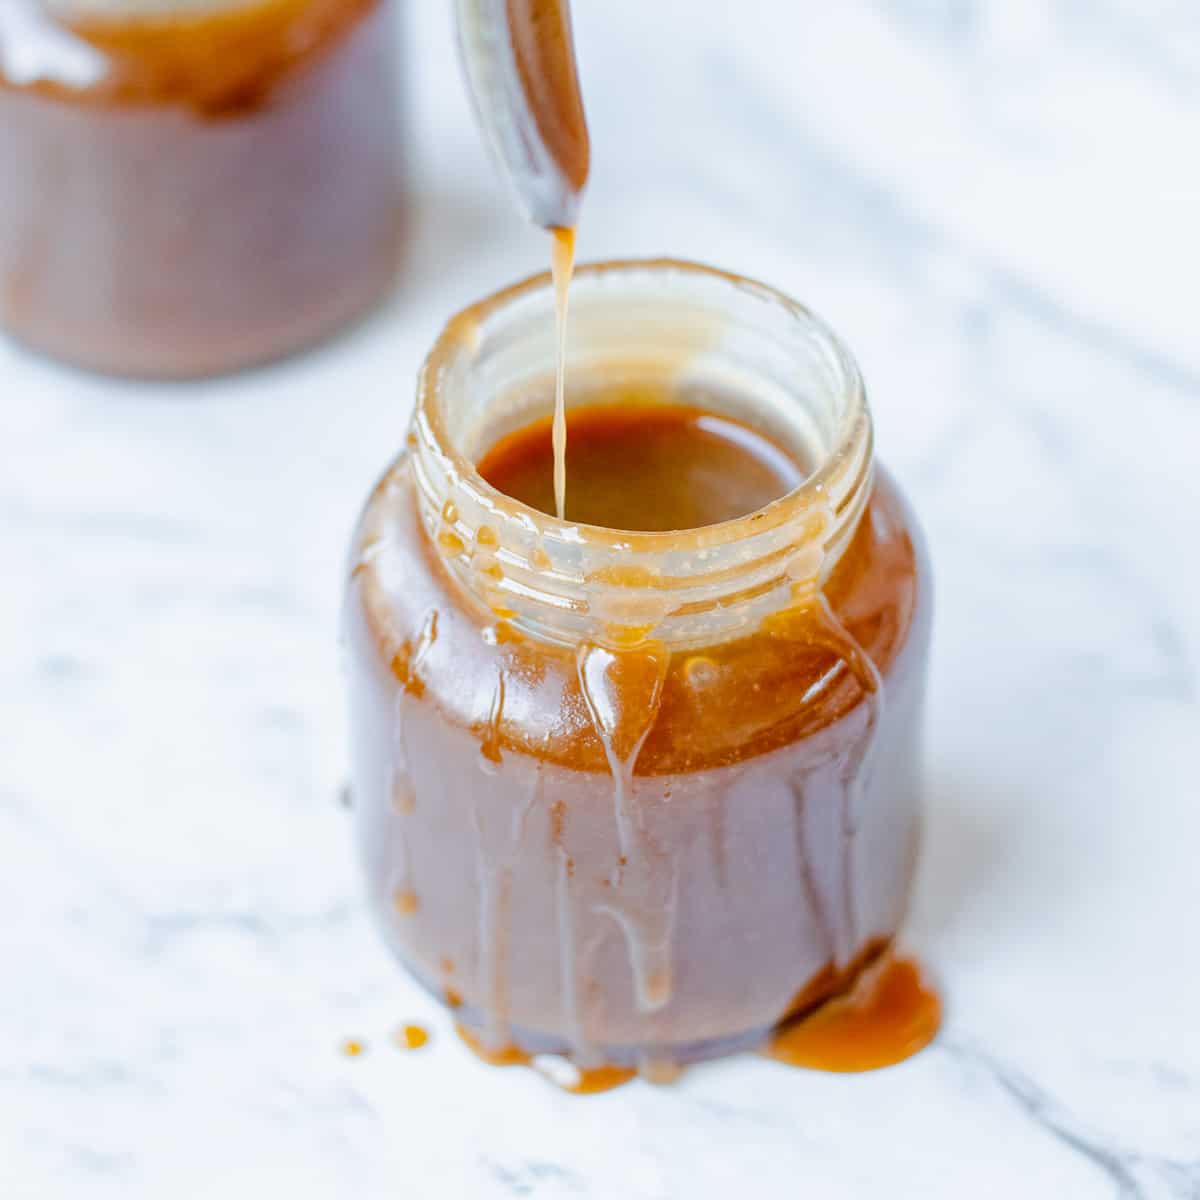 Caramel sauce in a glass jar